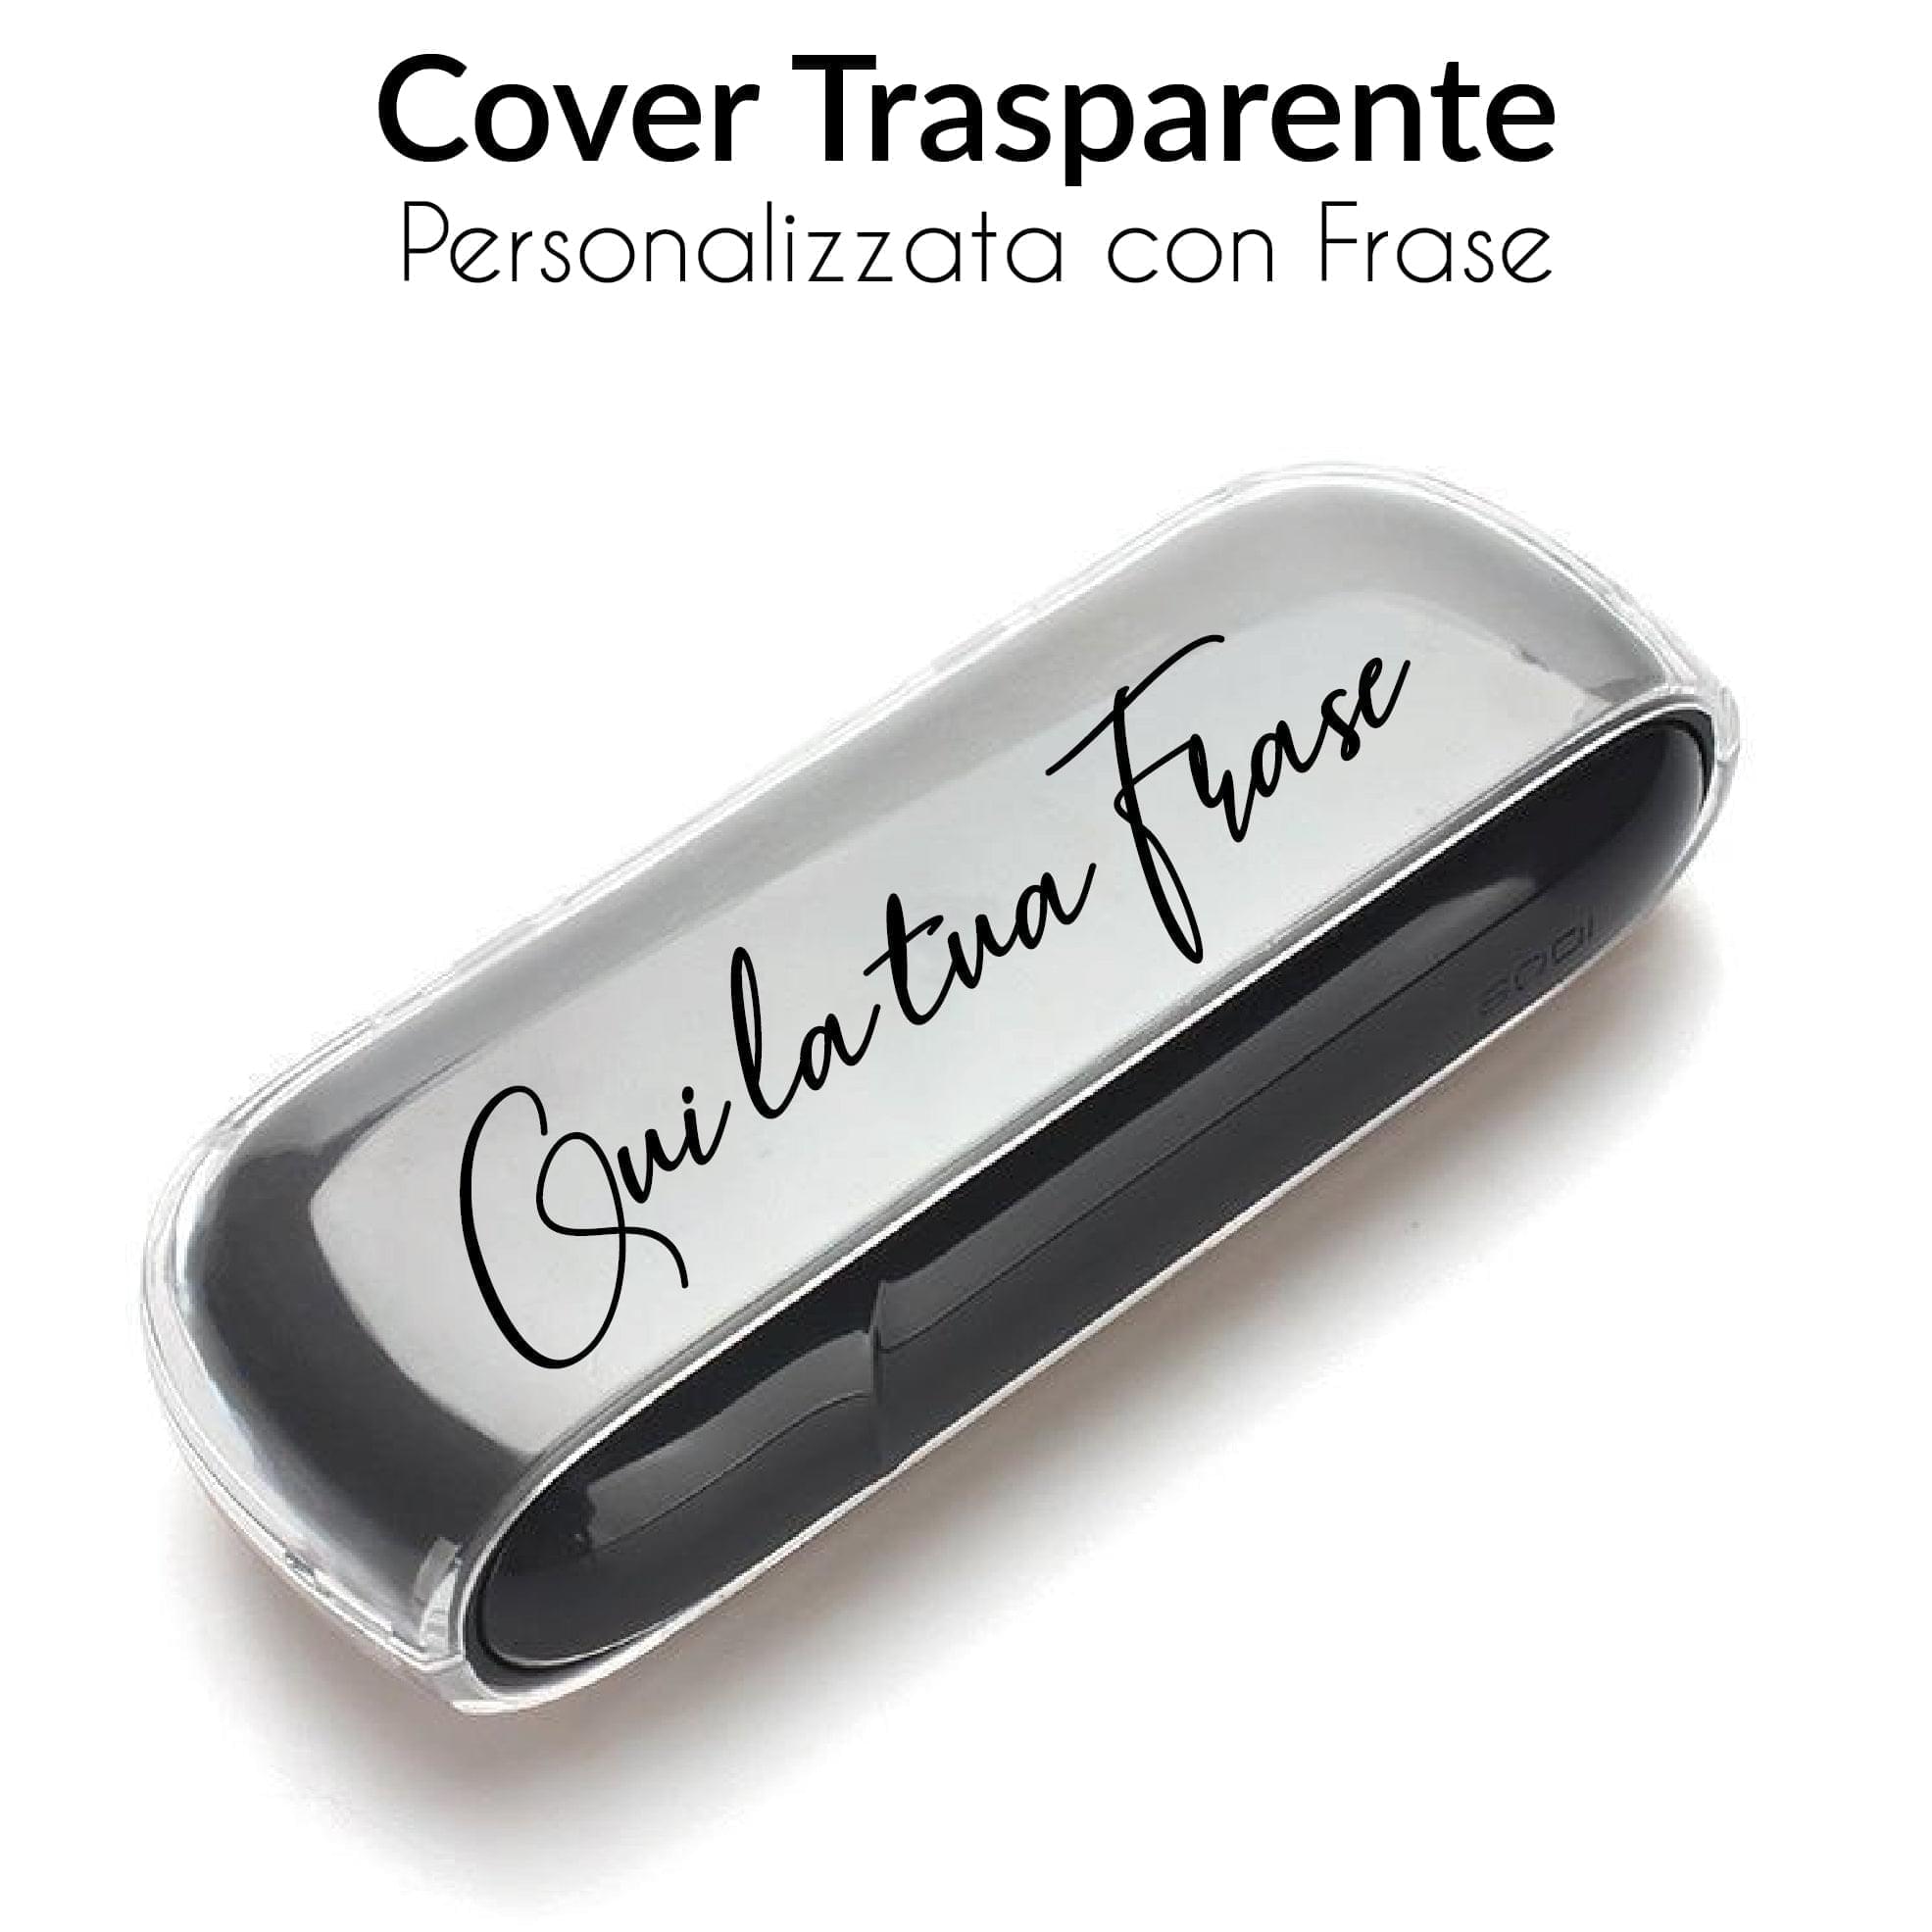 Cover IQOS trasparente - Personalizzata con Frase! Per IQOS 3 e